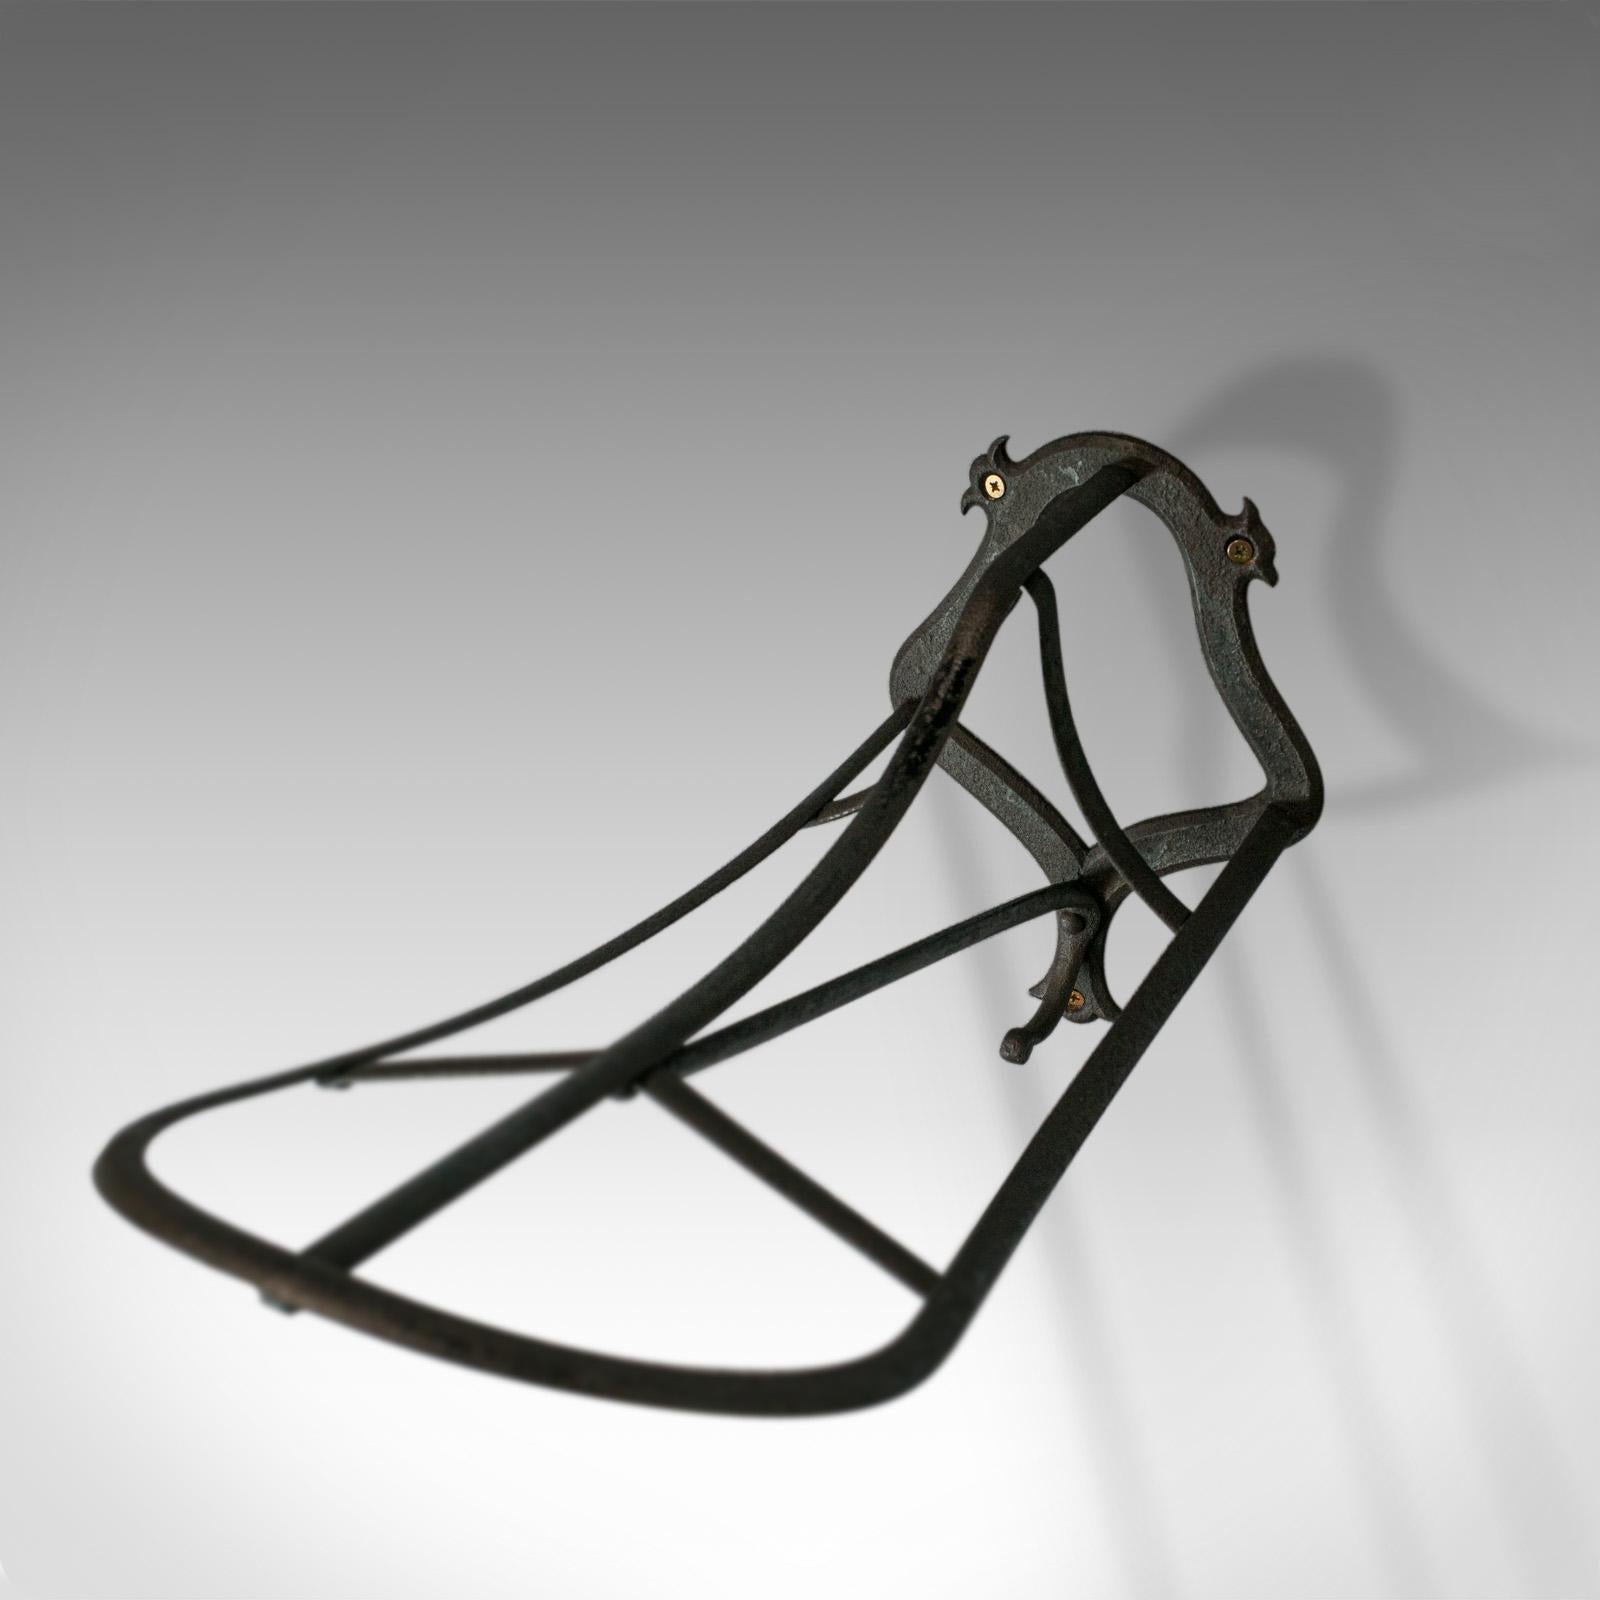 cast iron saddle rack